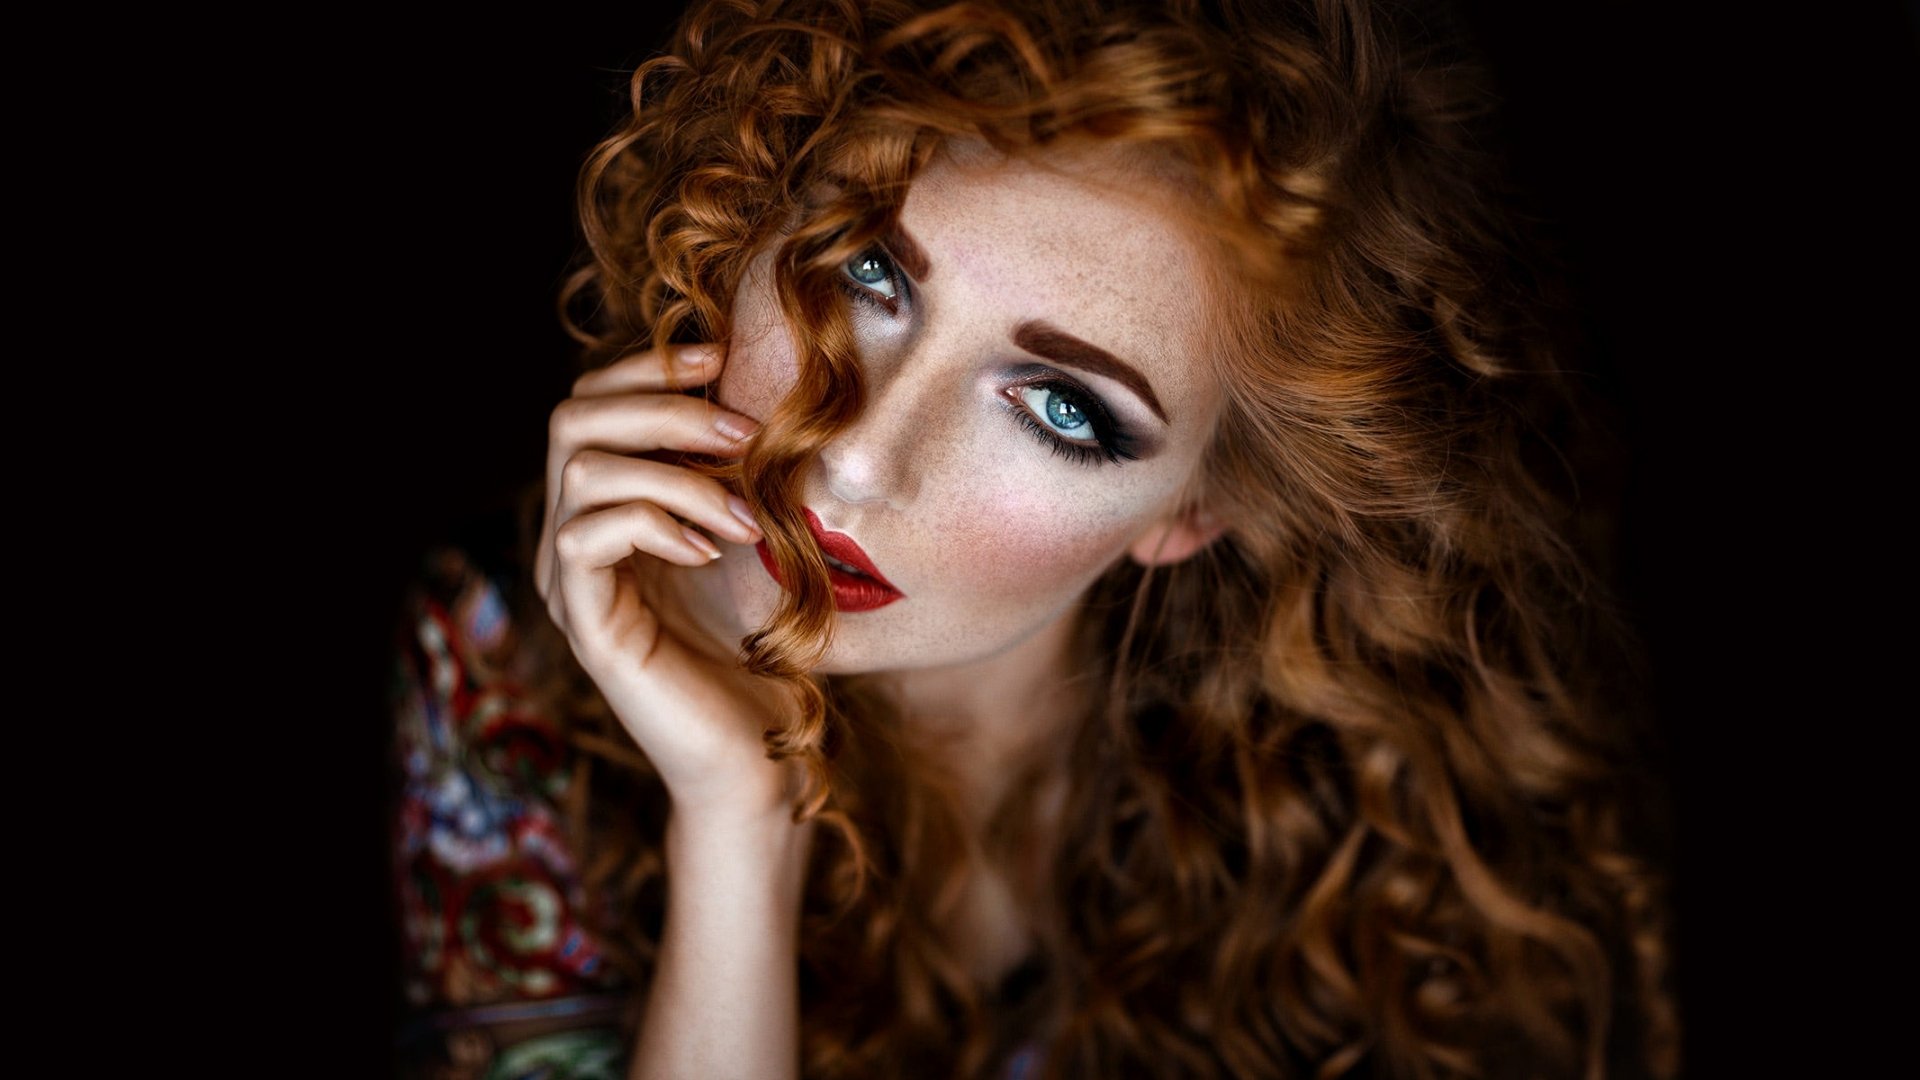 Download Blue Eyes Redhead Woman Model HD Wallpaper by Melanie Dietze